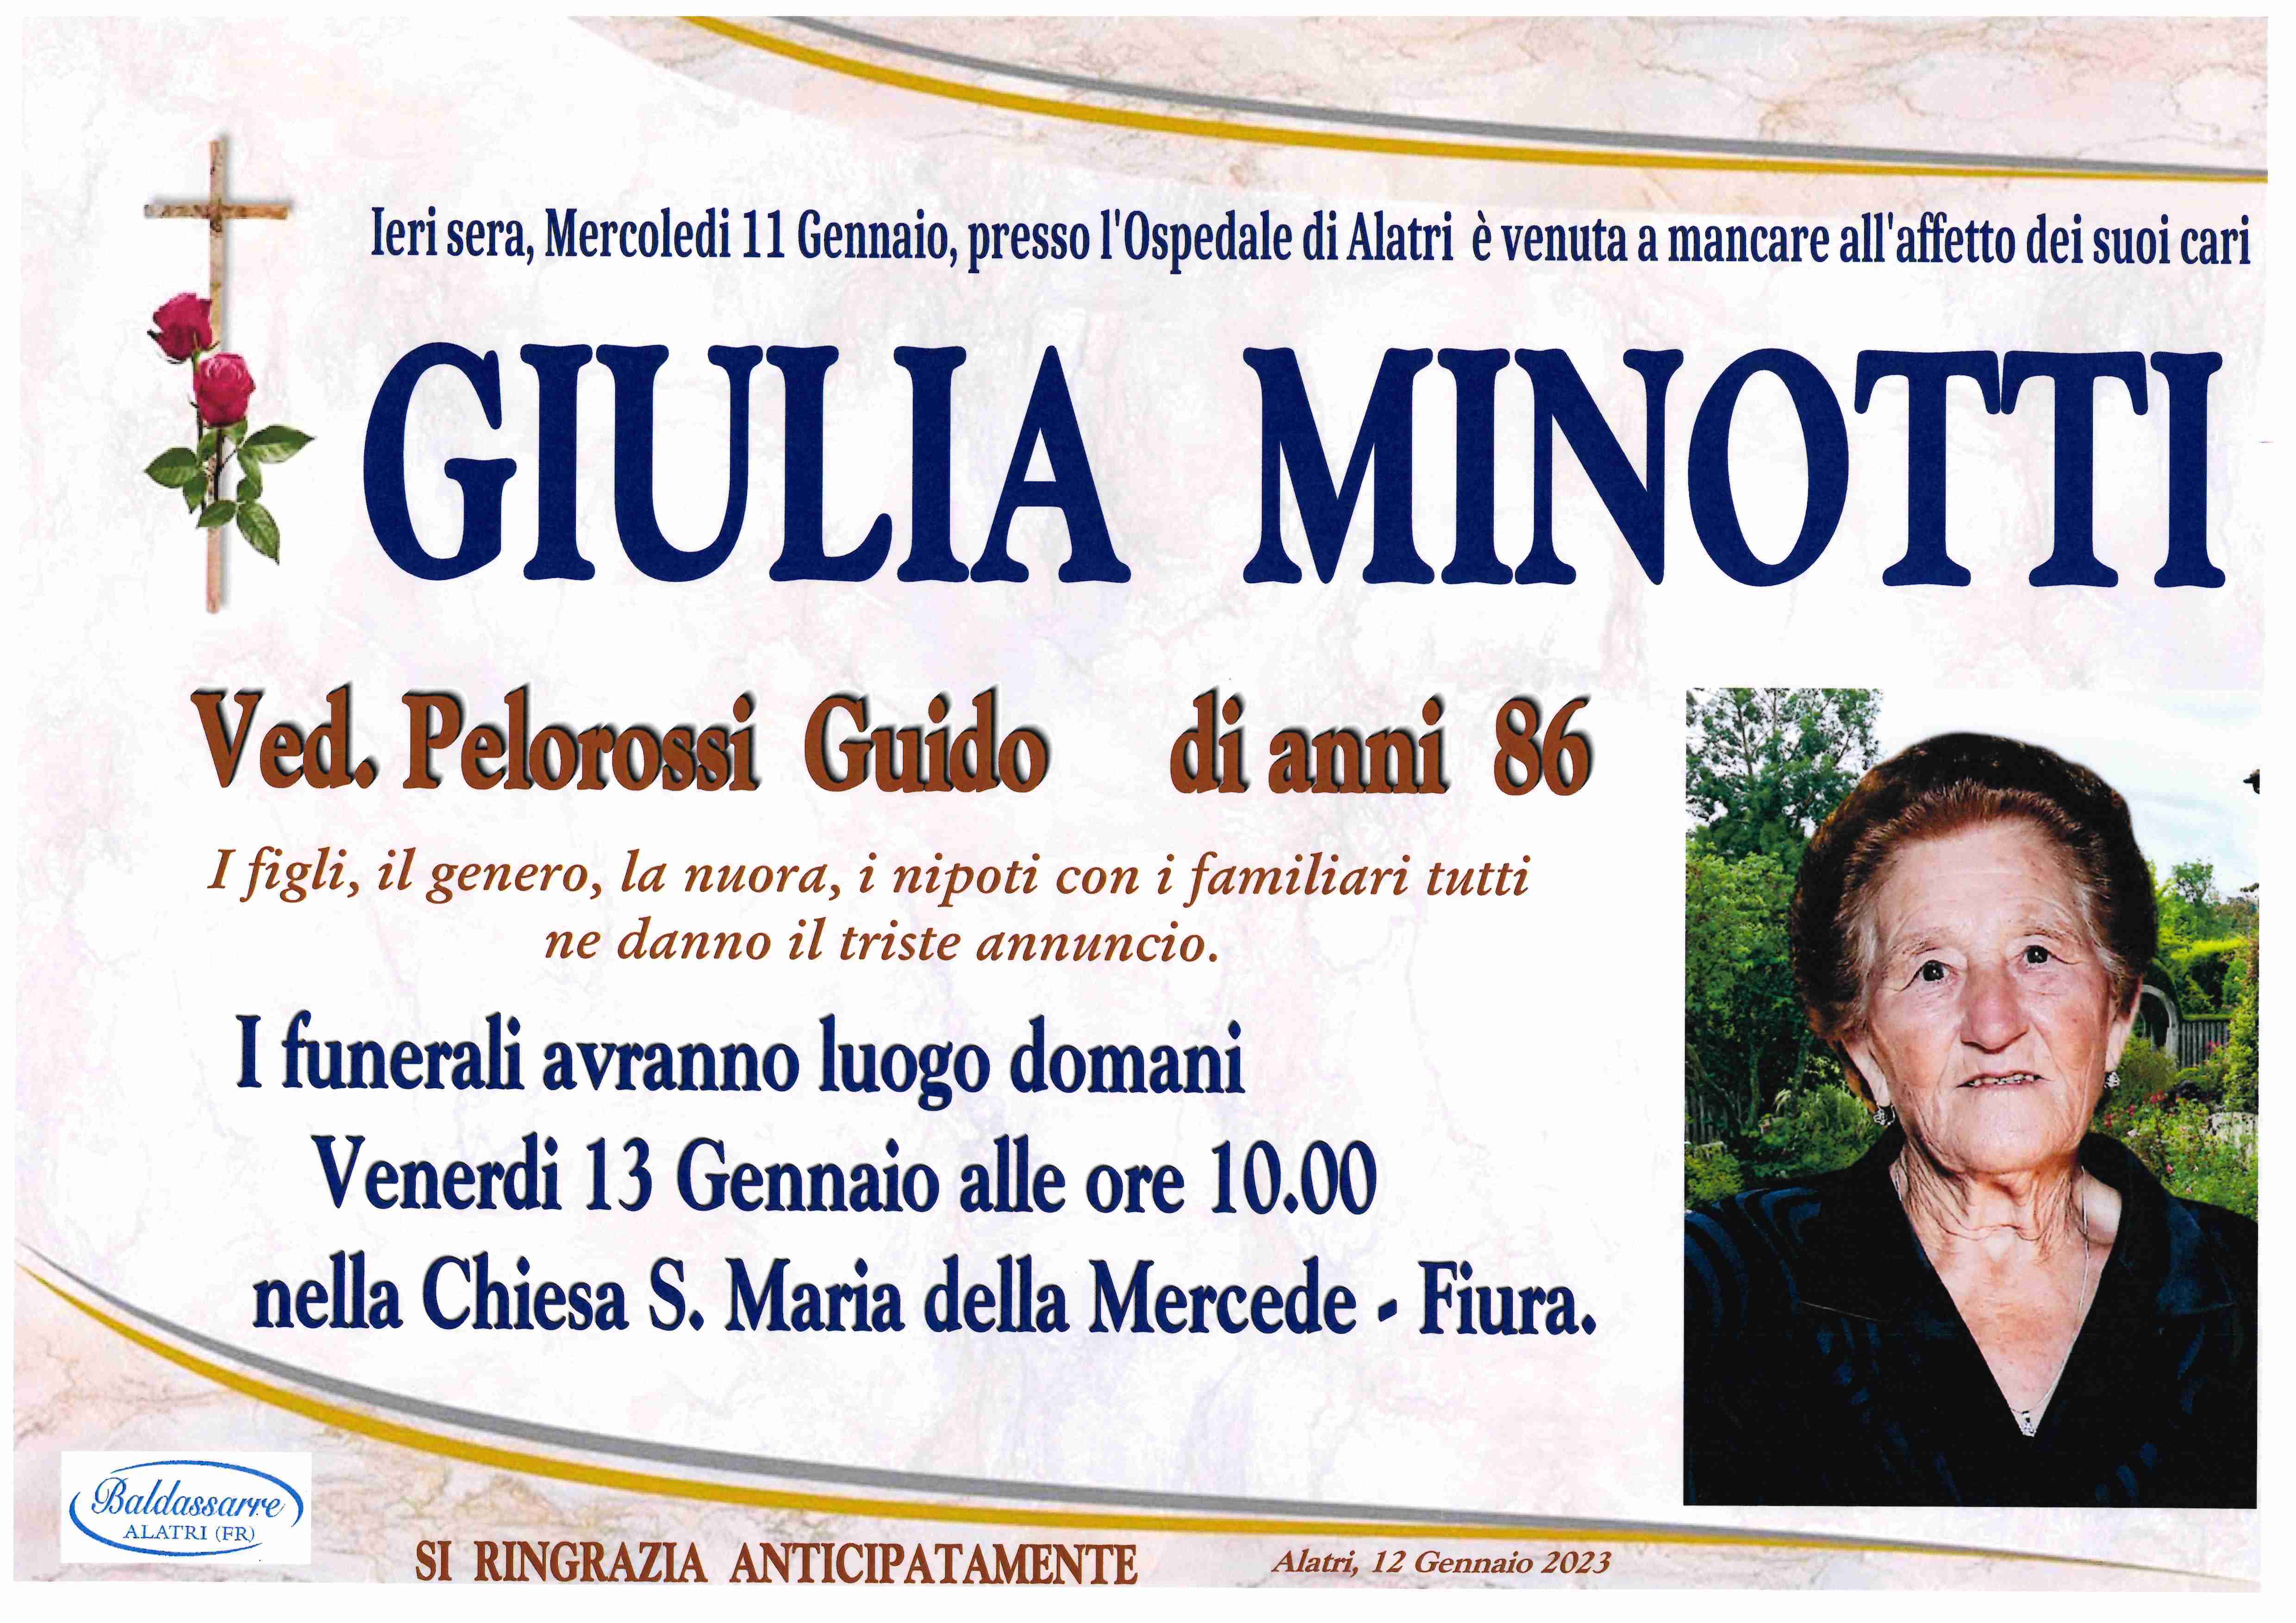 Giulia Minotti